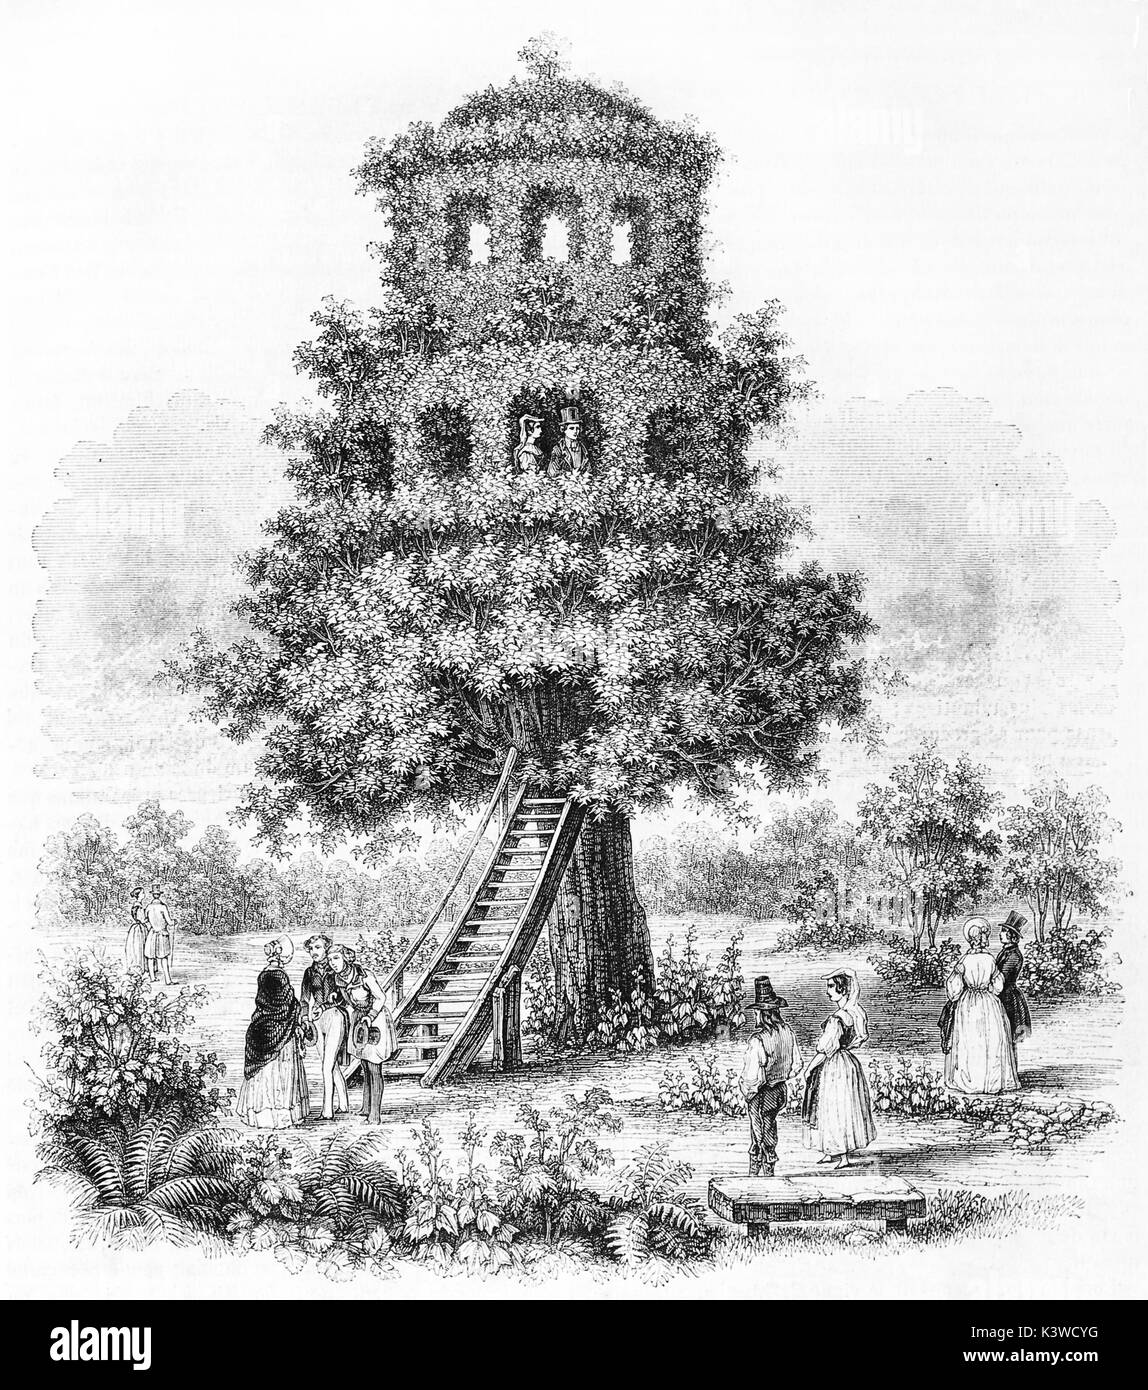 Vieille illustration d'un arbre-Mable house dans Matibò, près de Savigliano en Italie. Par auteur non identifié, publié le Magasin Pittoresque, Paris, 1841 Banque D'Images